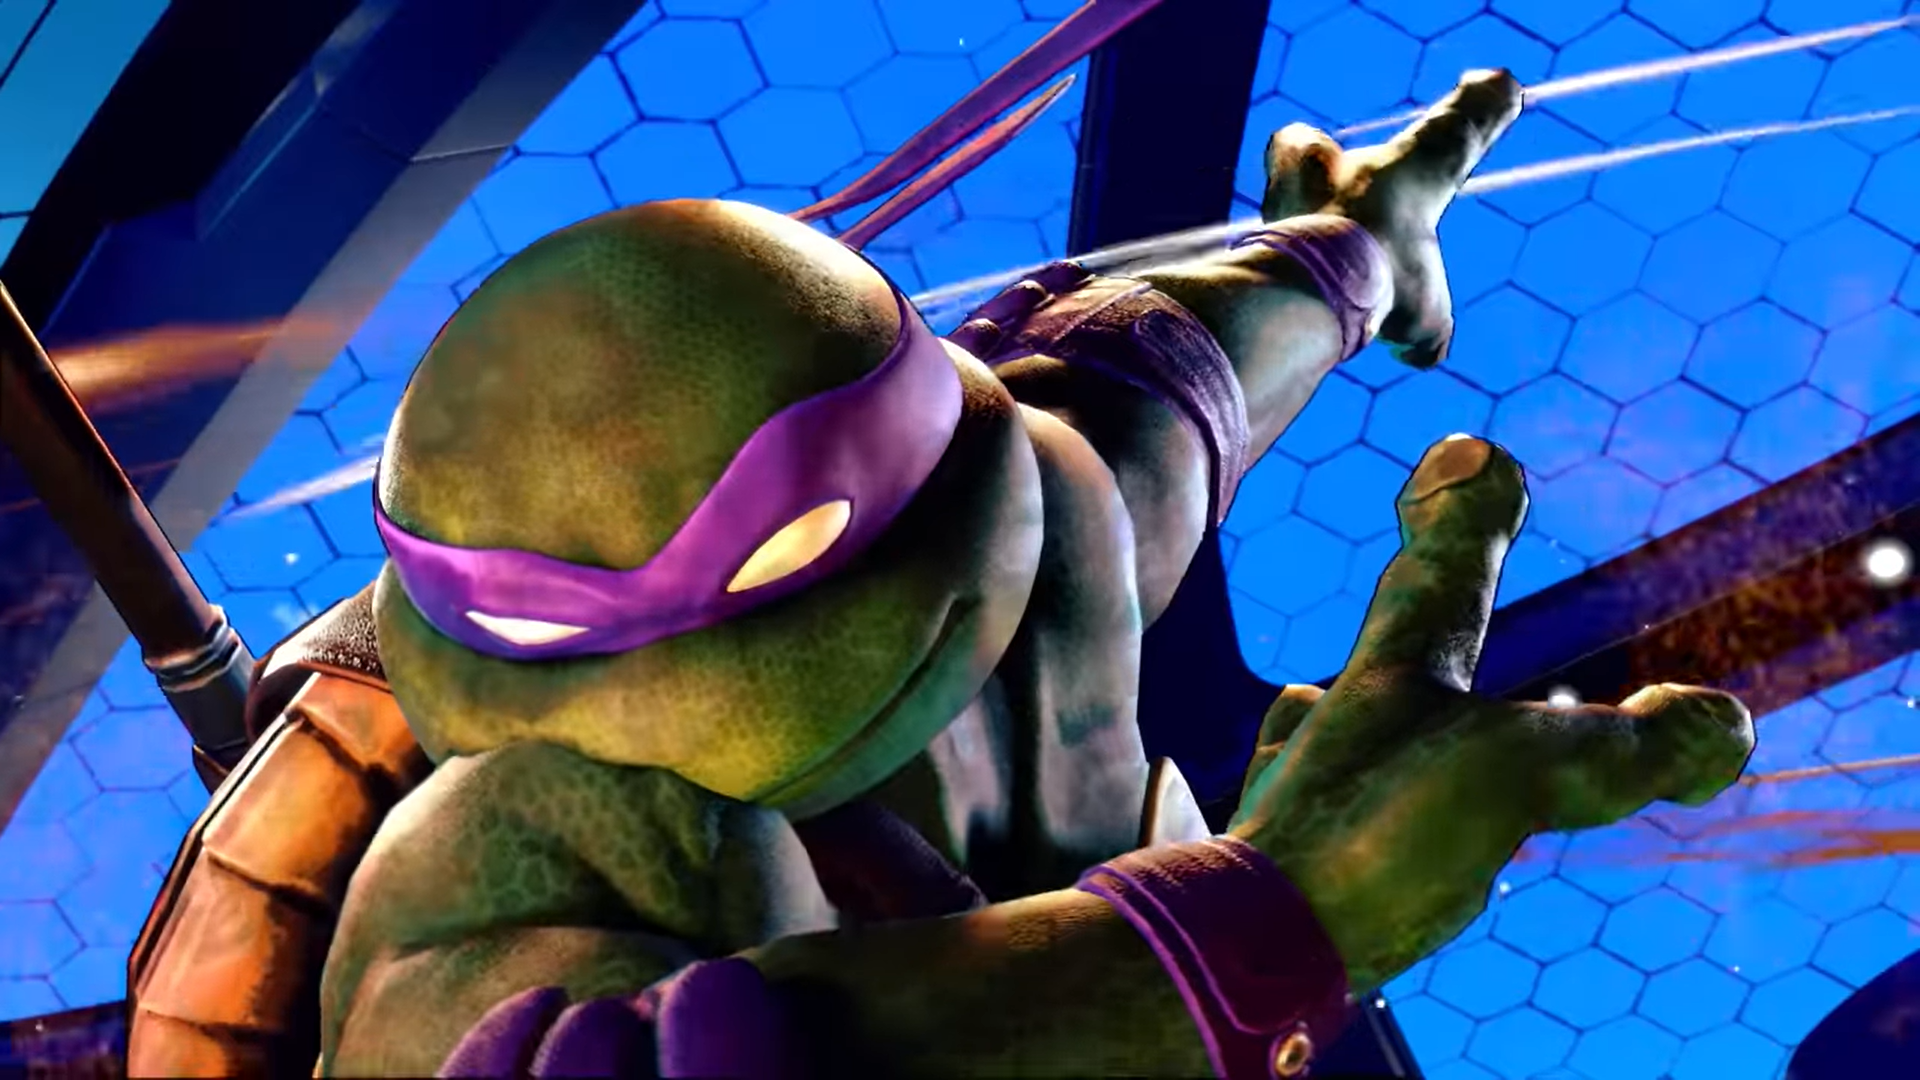 How to Get Teenage Mutant Ninja Turtles Skins in Street Fighter 6